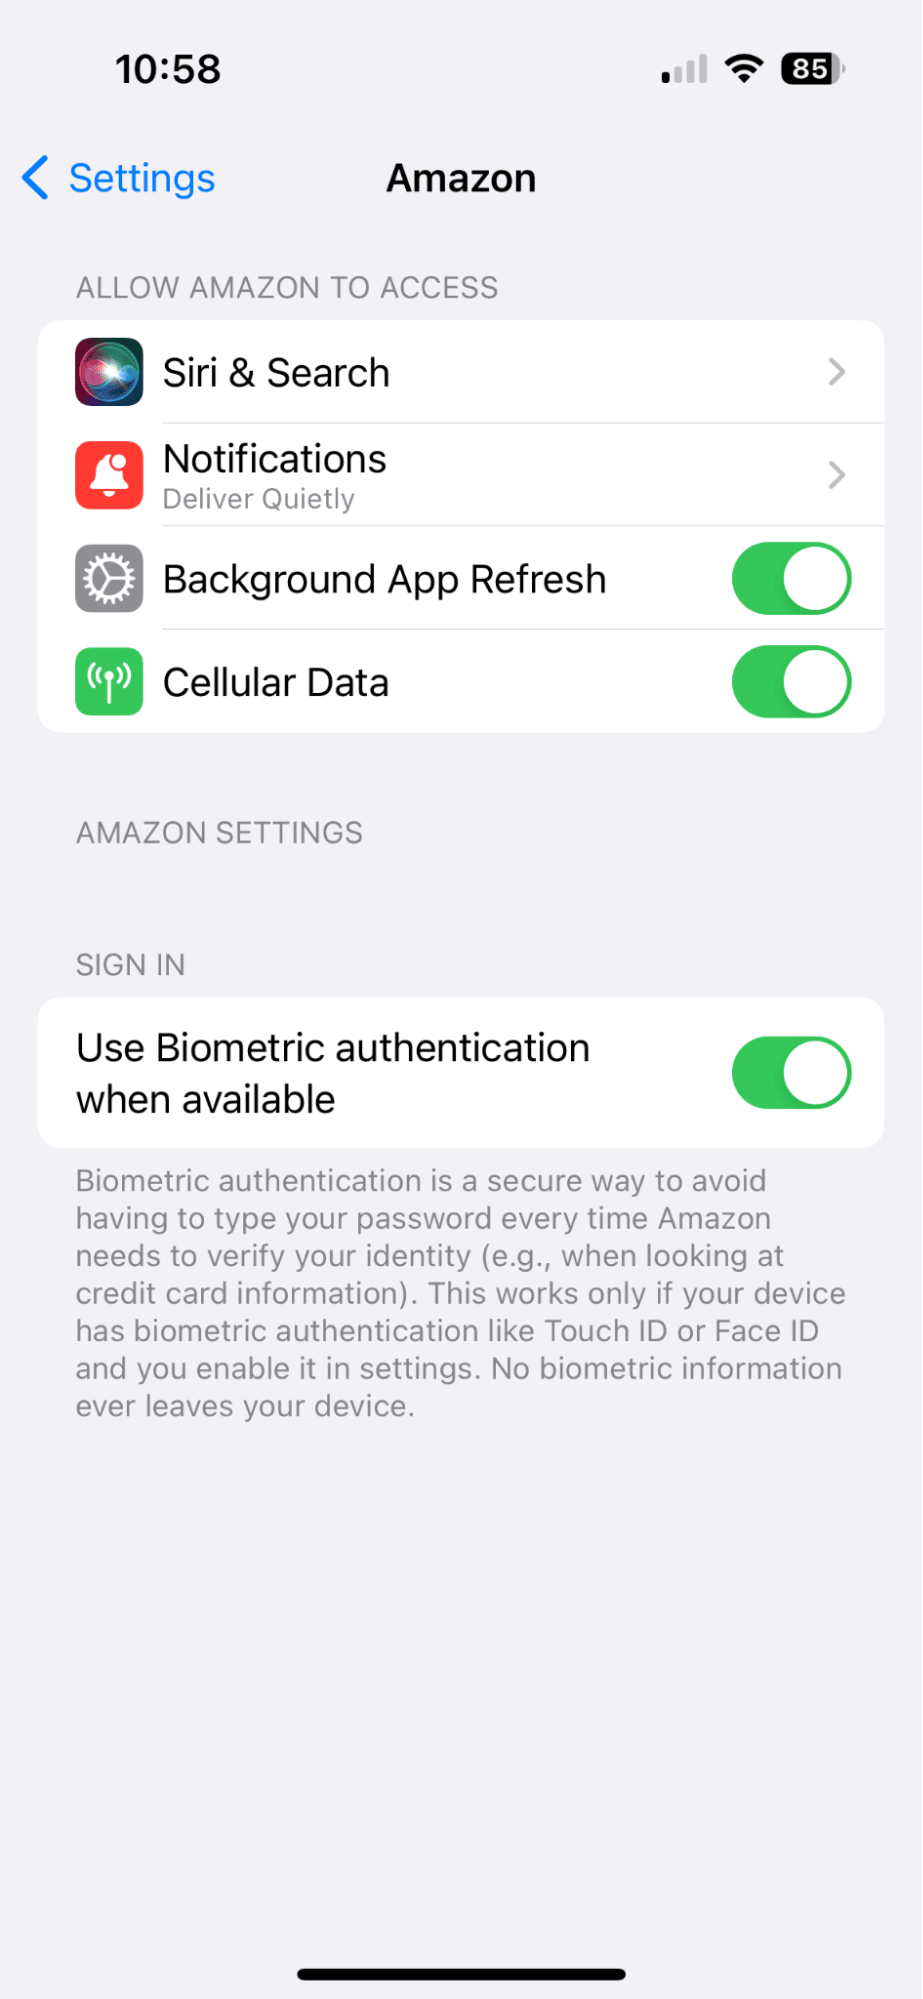 Amazon settings on iPhone